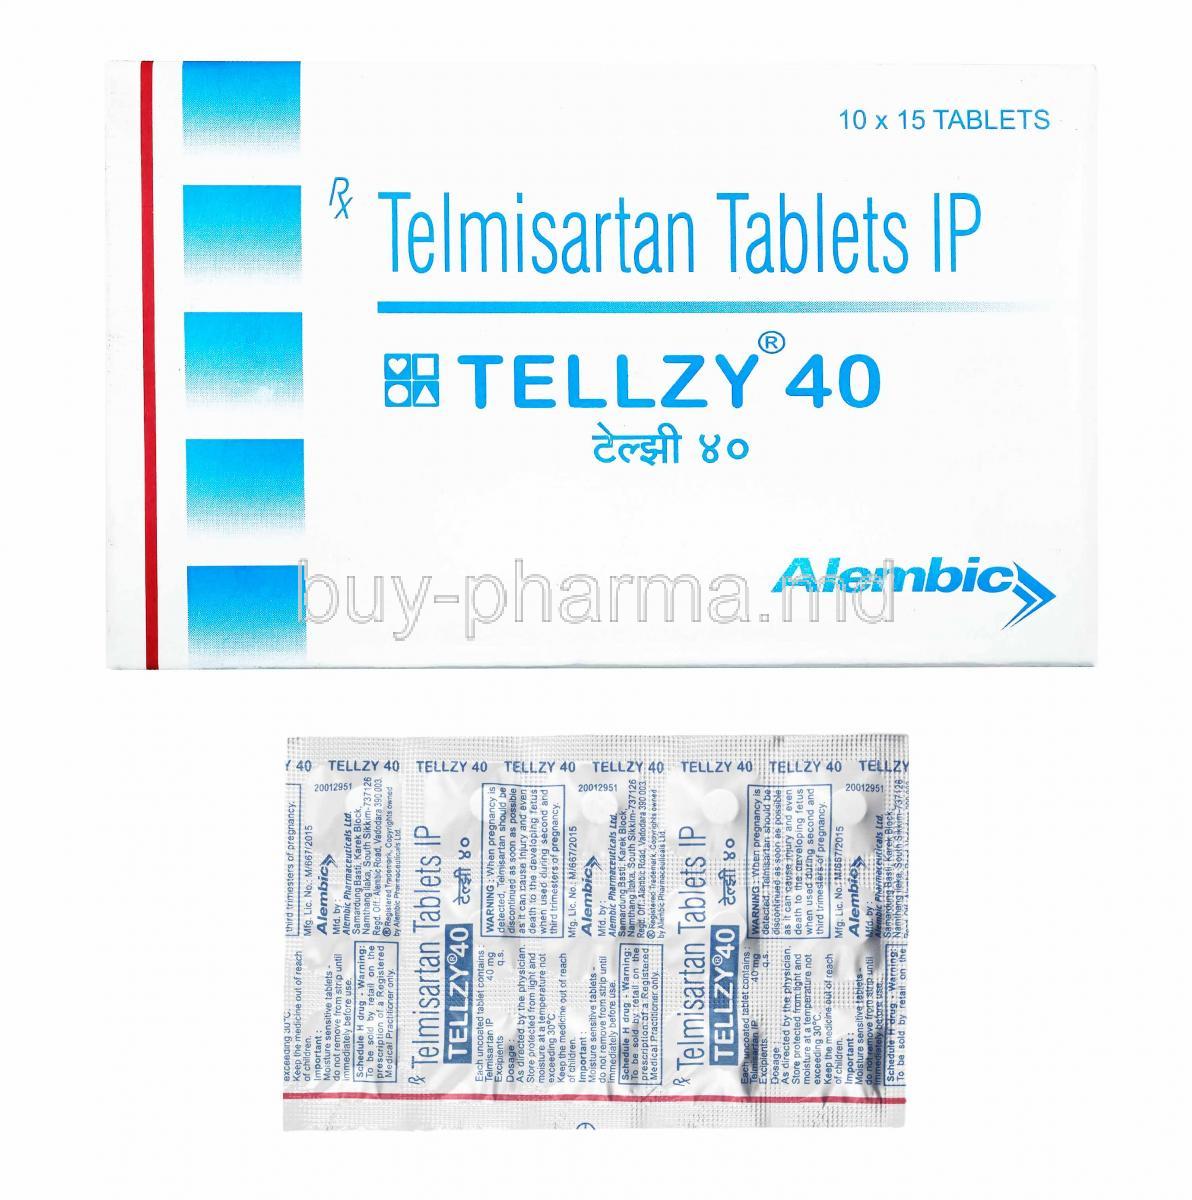 Tellzy, Telmisartan 40mg box and tablets